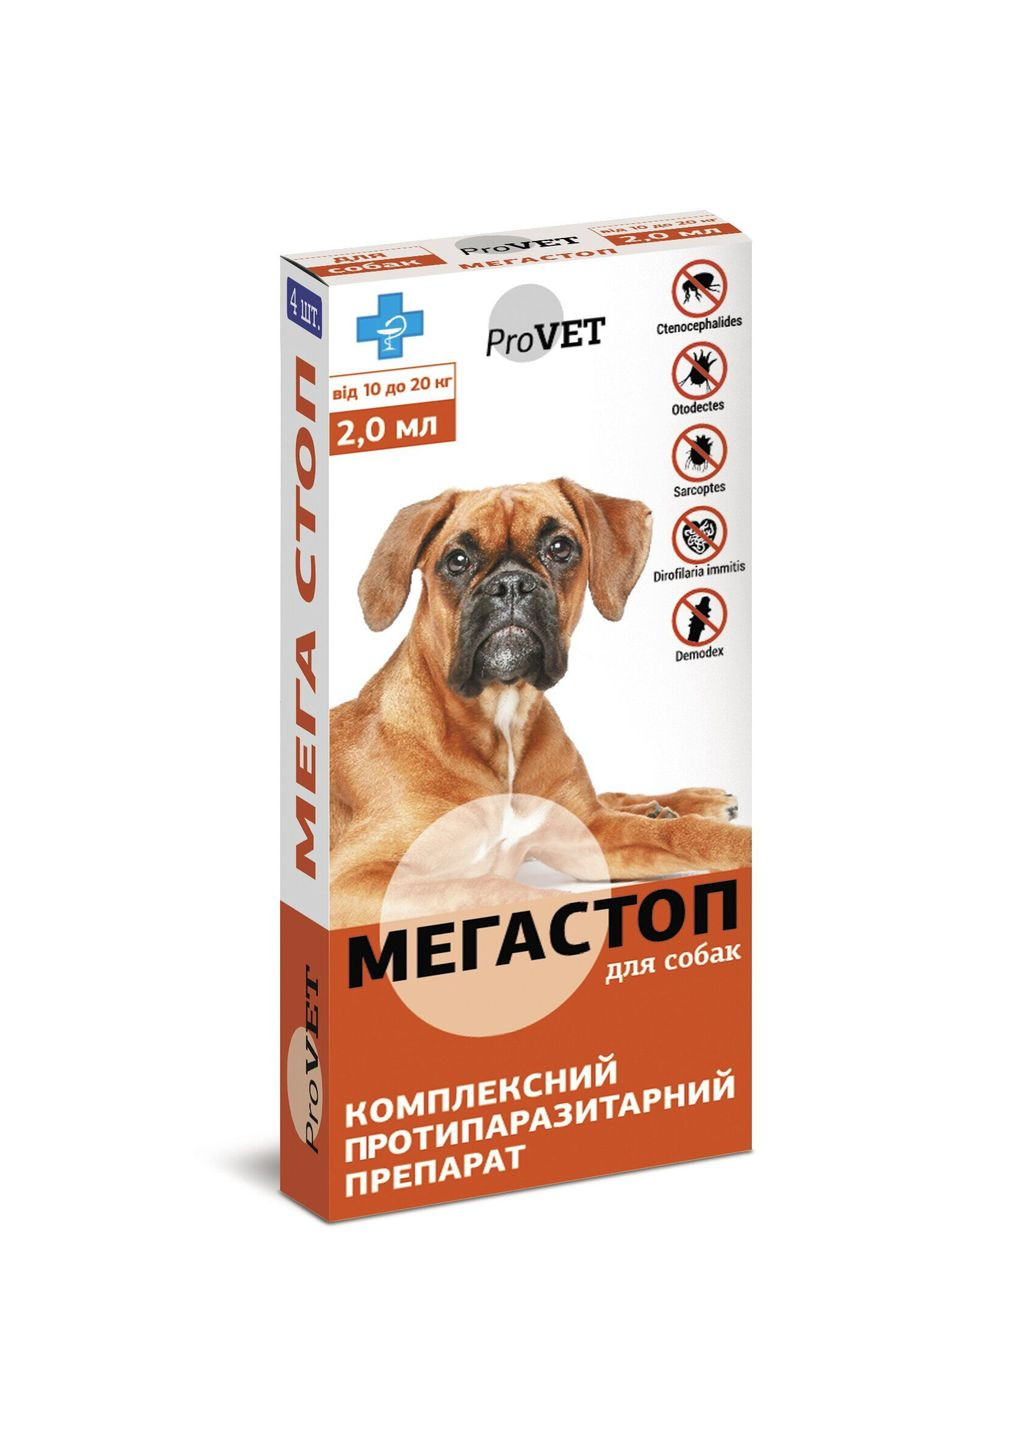 Капли от блох, клещей, нематод и дирофилярий ТМ Природа МегаСтоп 4 пипетки по 2 мл на холке для собак от 10 до 20 кг ProVET (292114874)